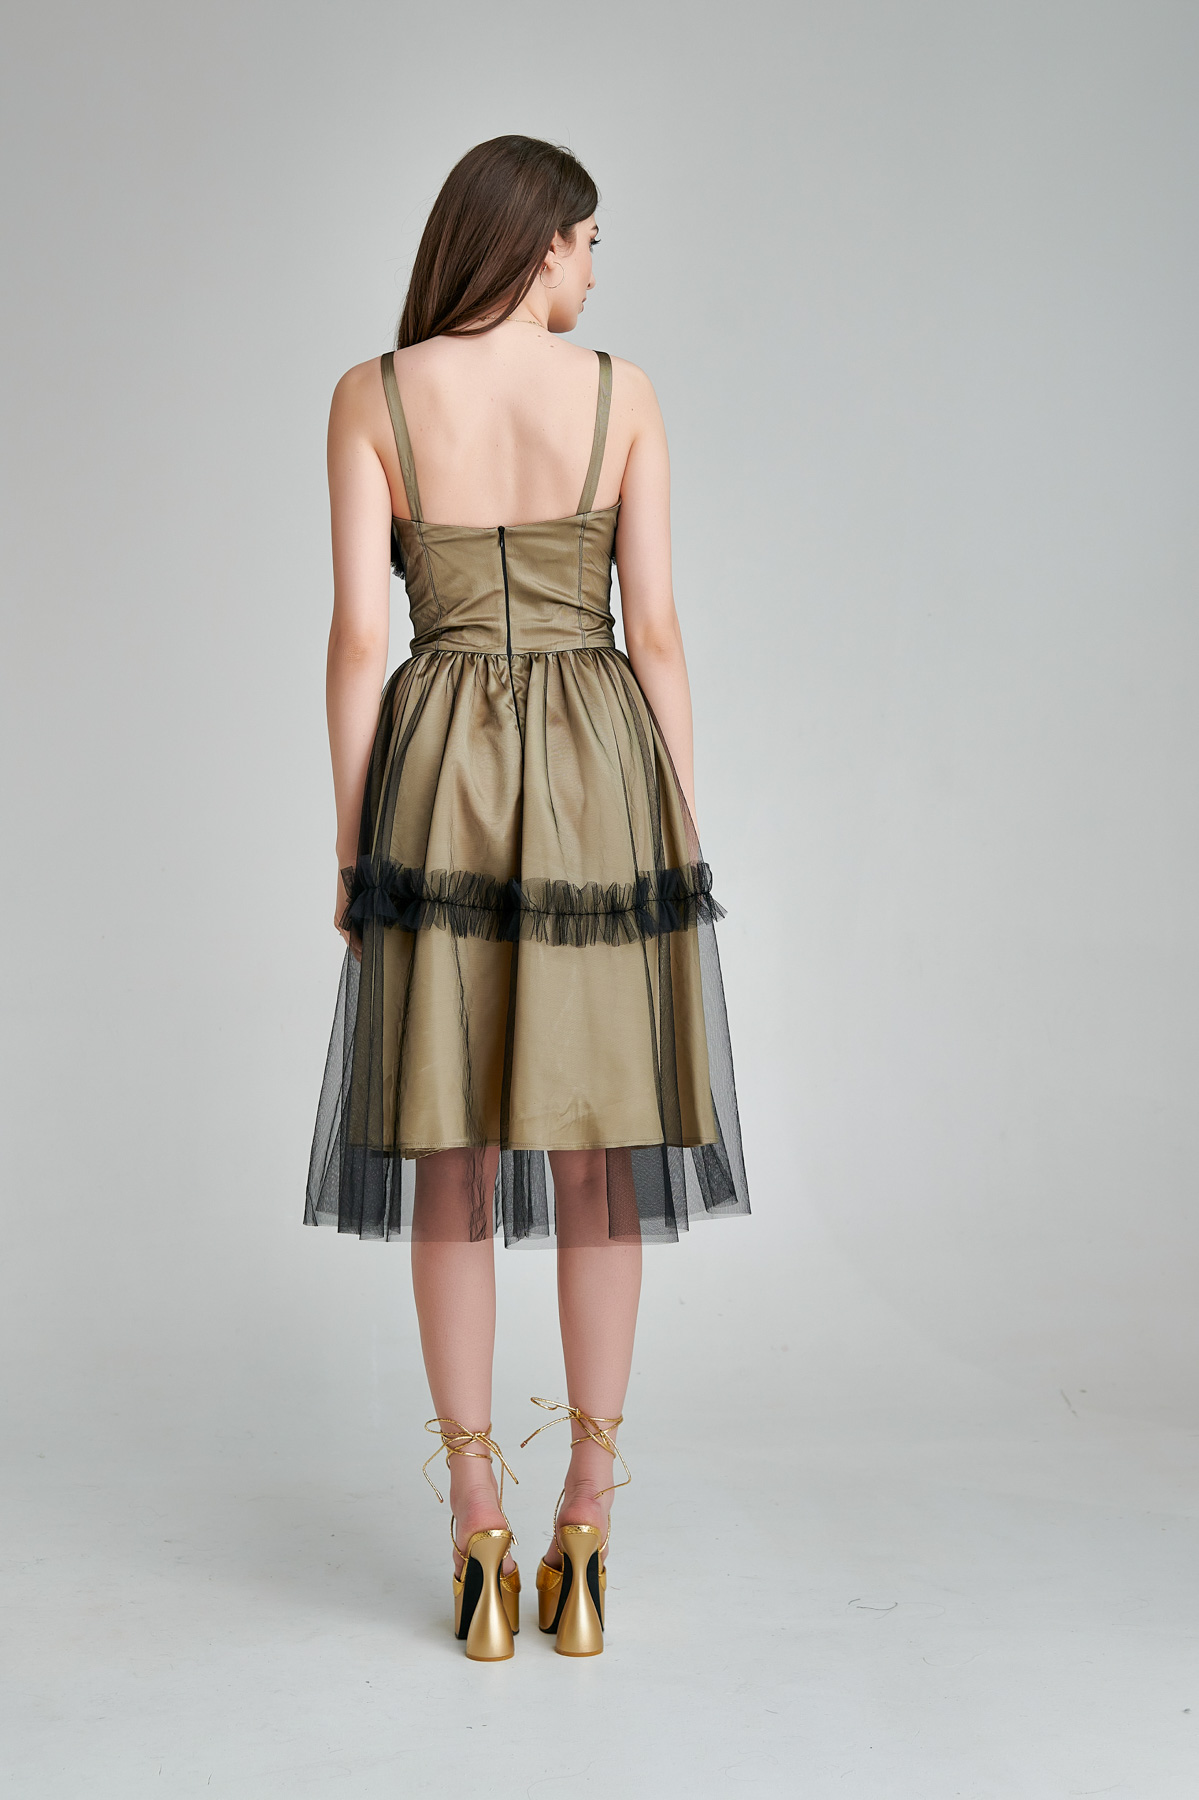 Rochie MADINY eleganta cu corset din tul negru. Materiale naturale, design unicat, cu broderie si aplicatii handmade